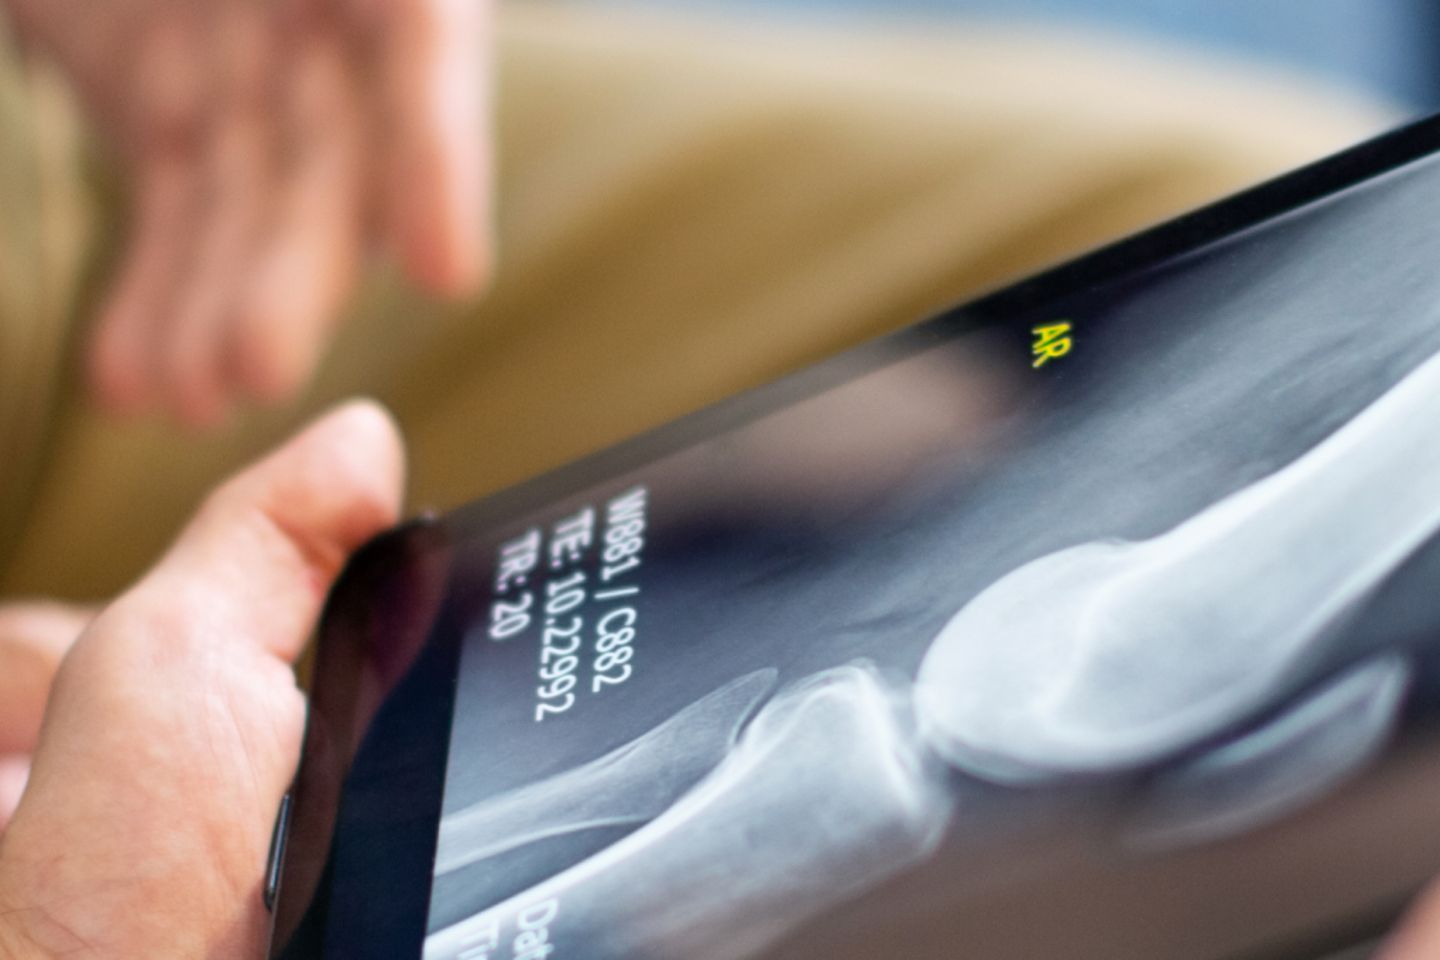 Handen die tablet met röntgenfoto vasthouden. Op de achtergrond vage handen van een andere persoon.